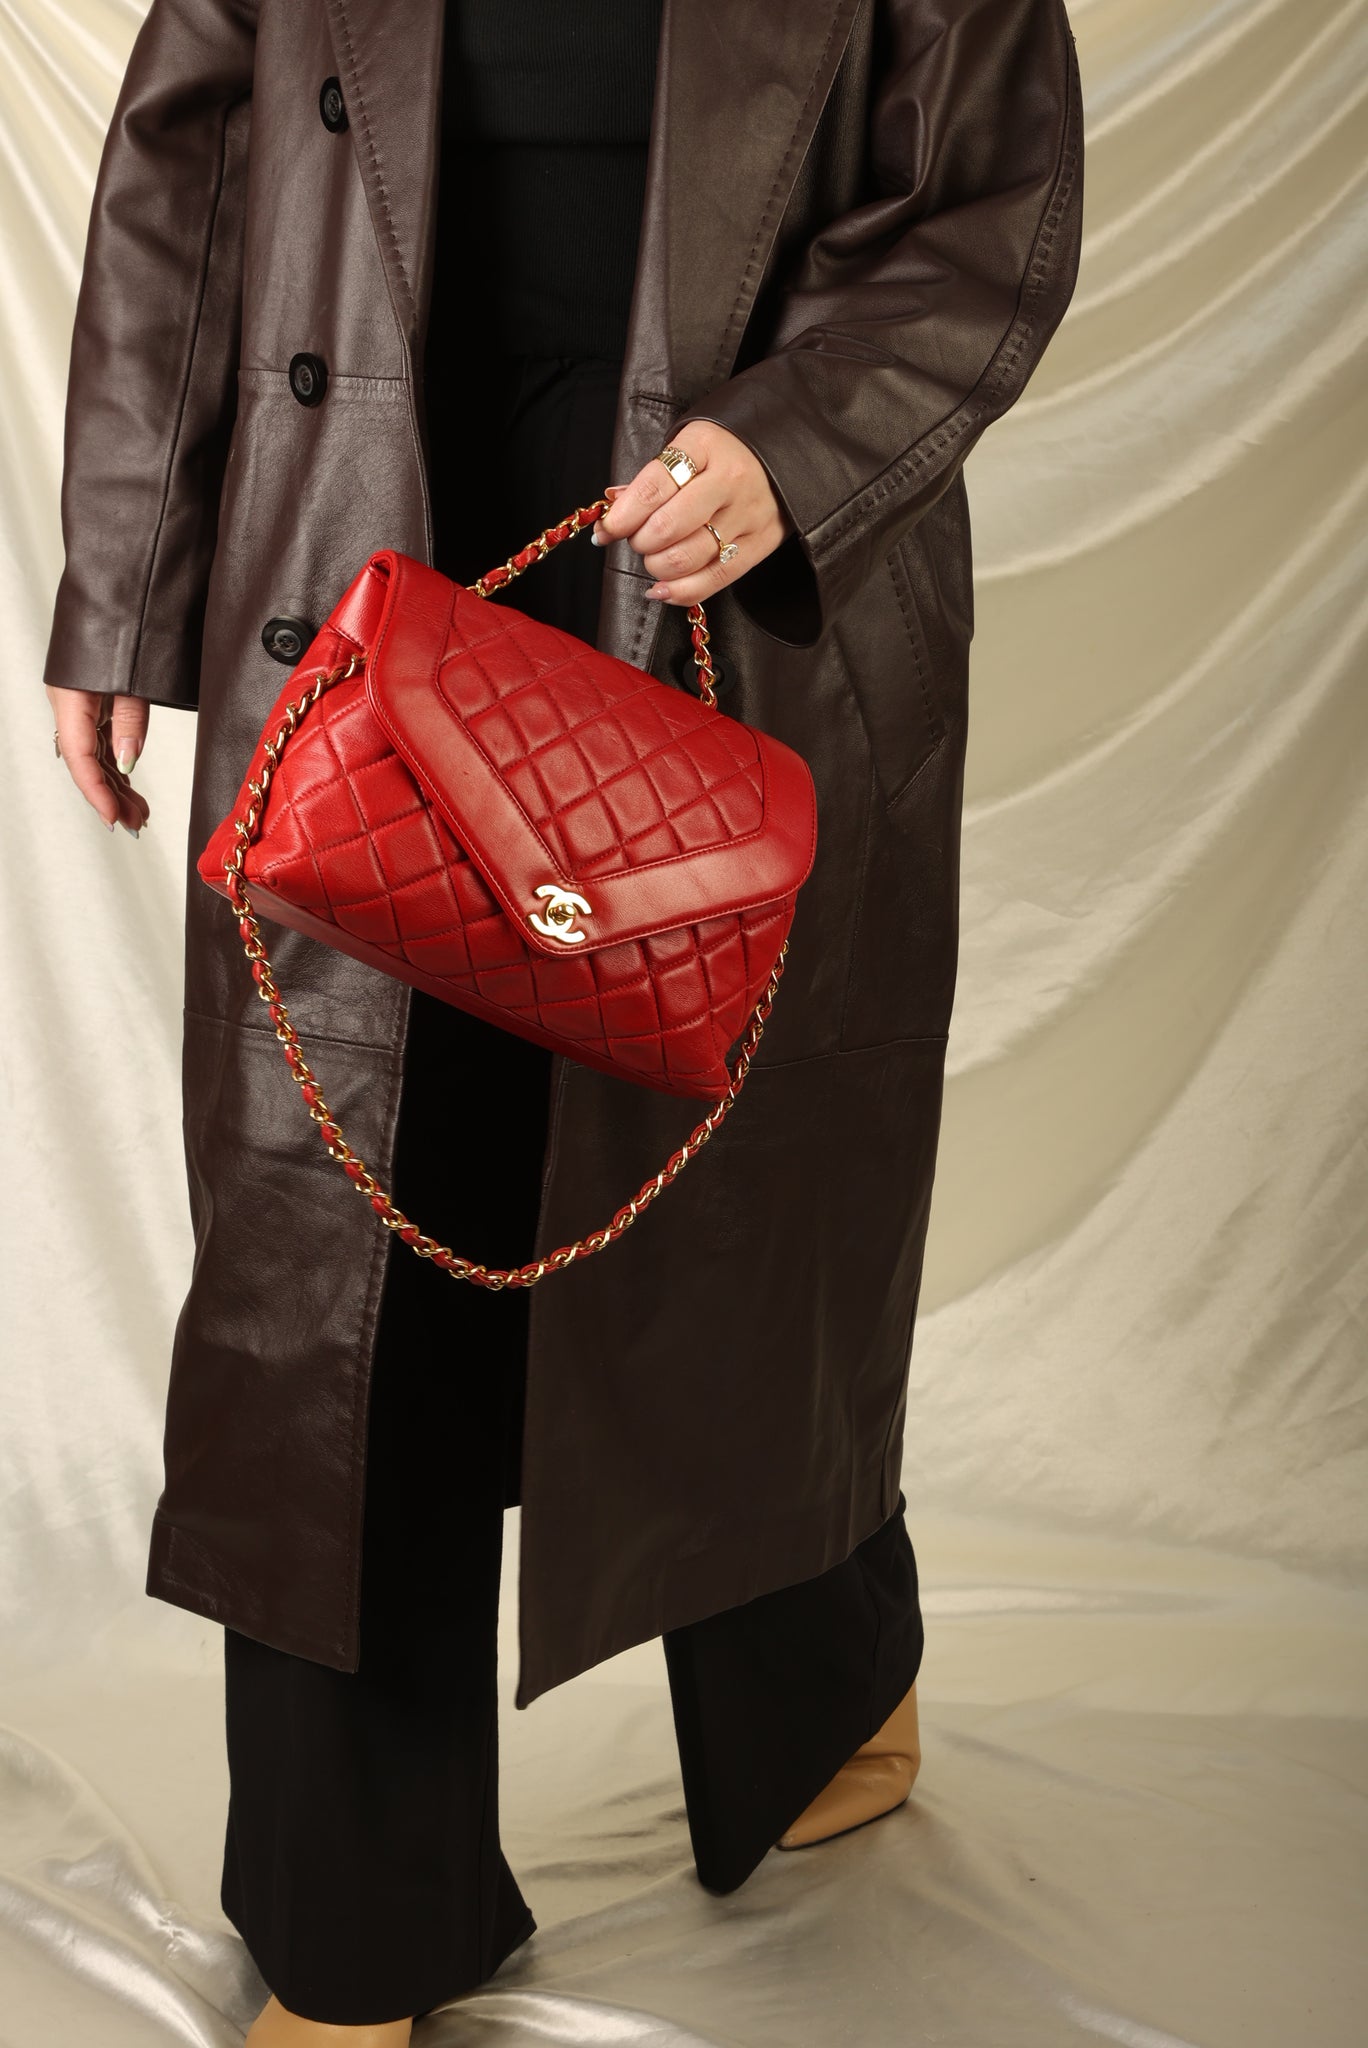 Chanel Lambskin Turnlock Flap Bag